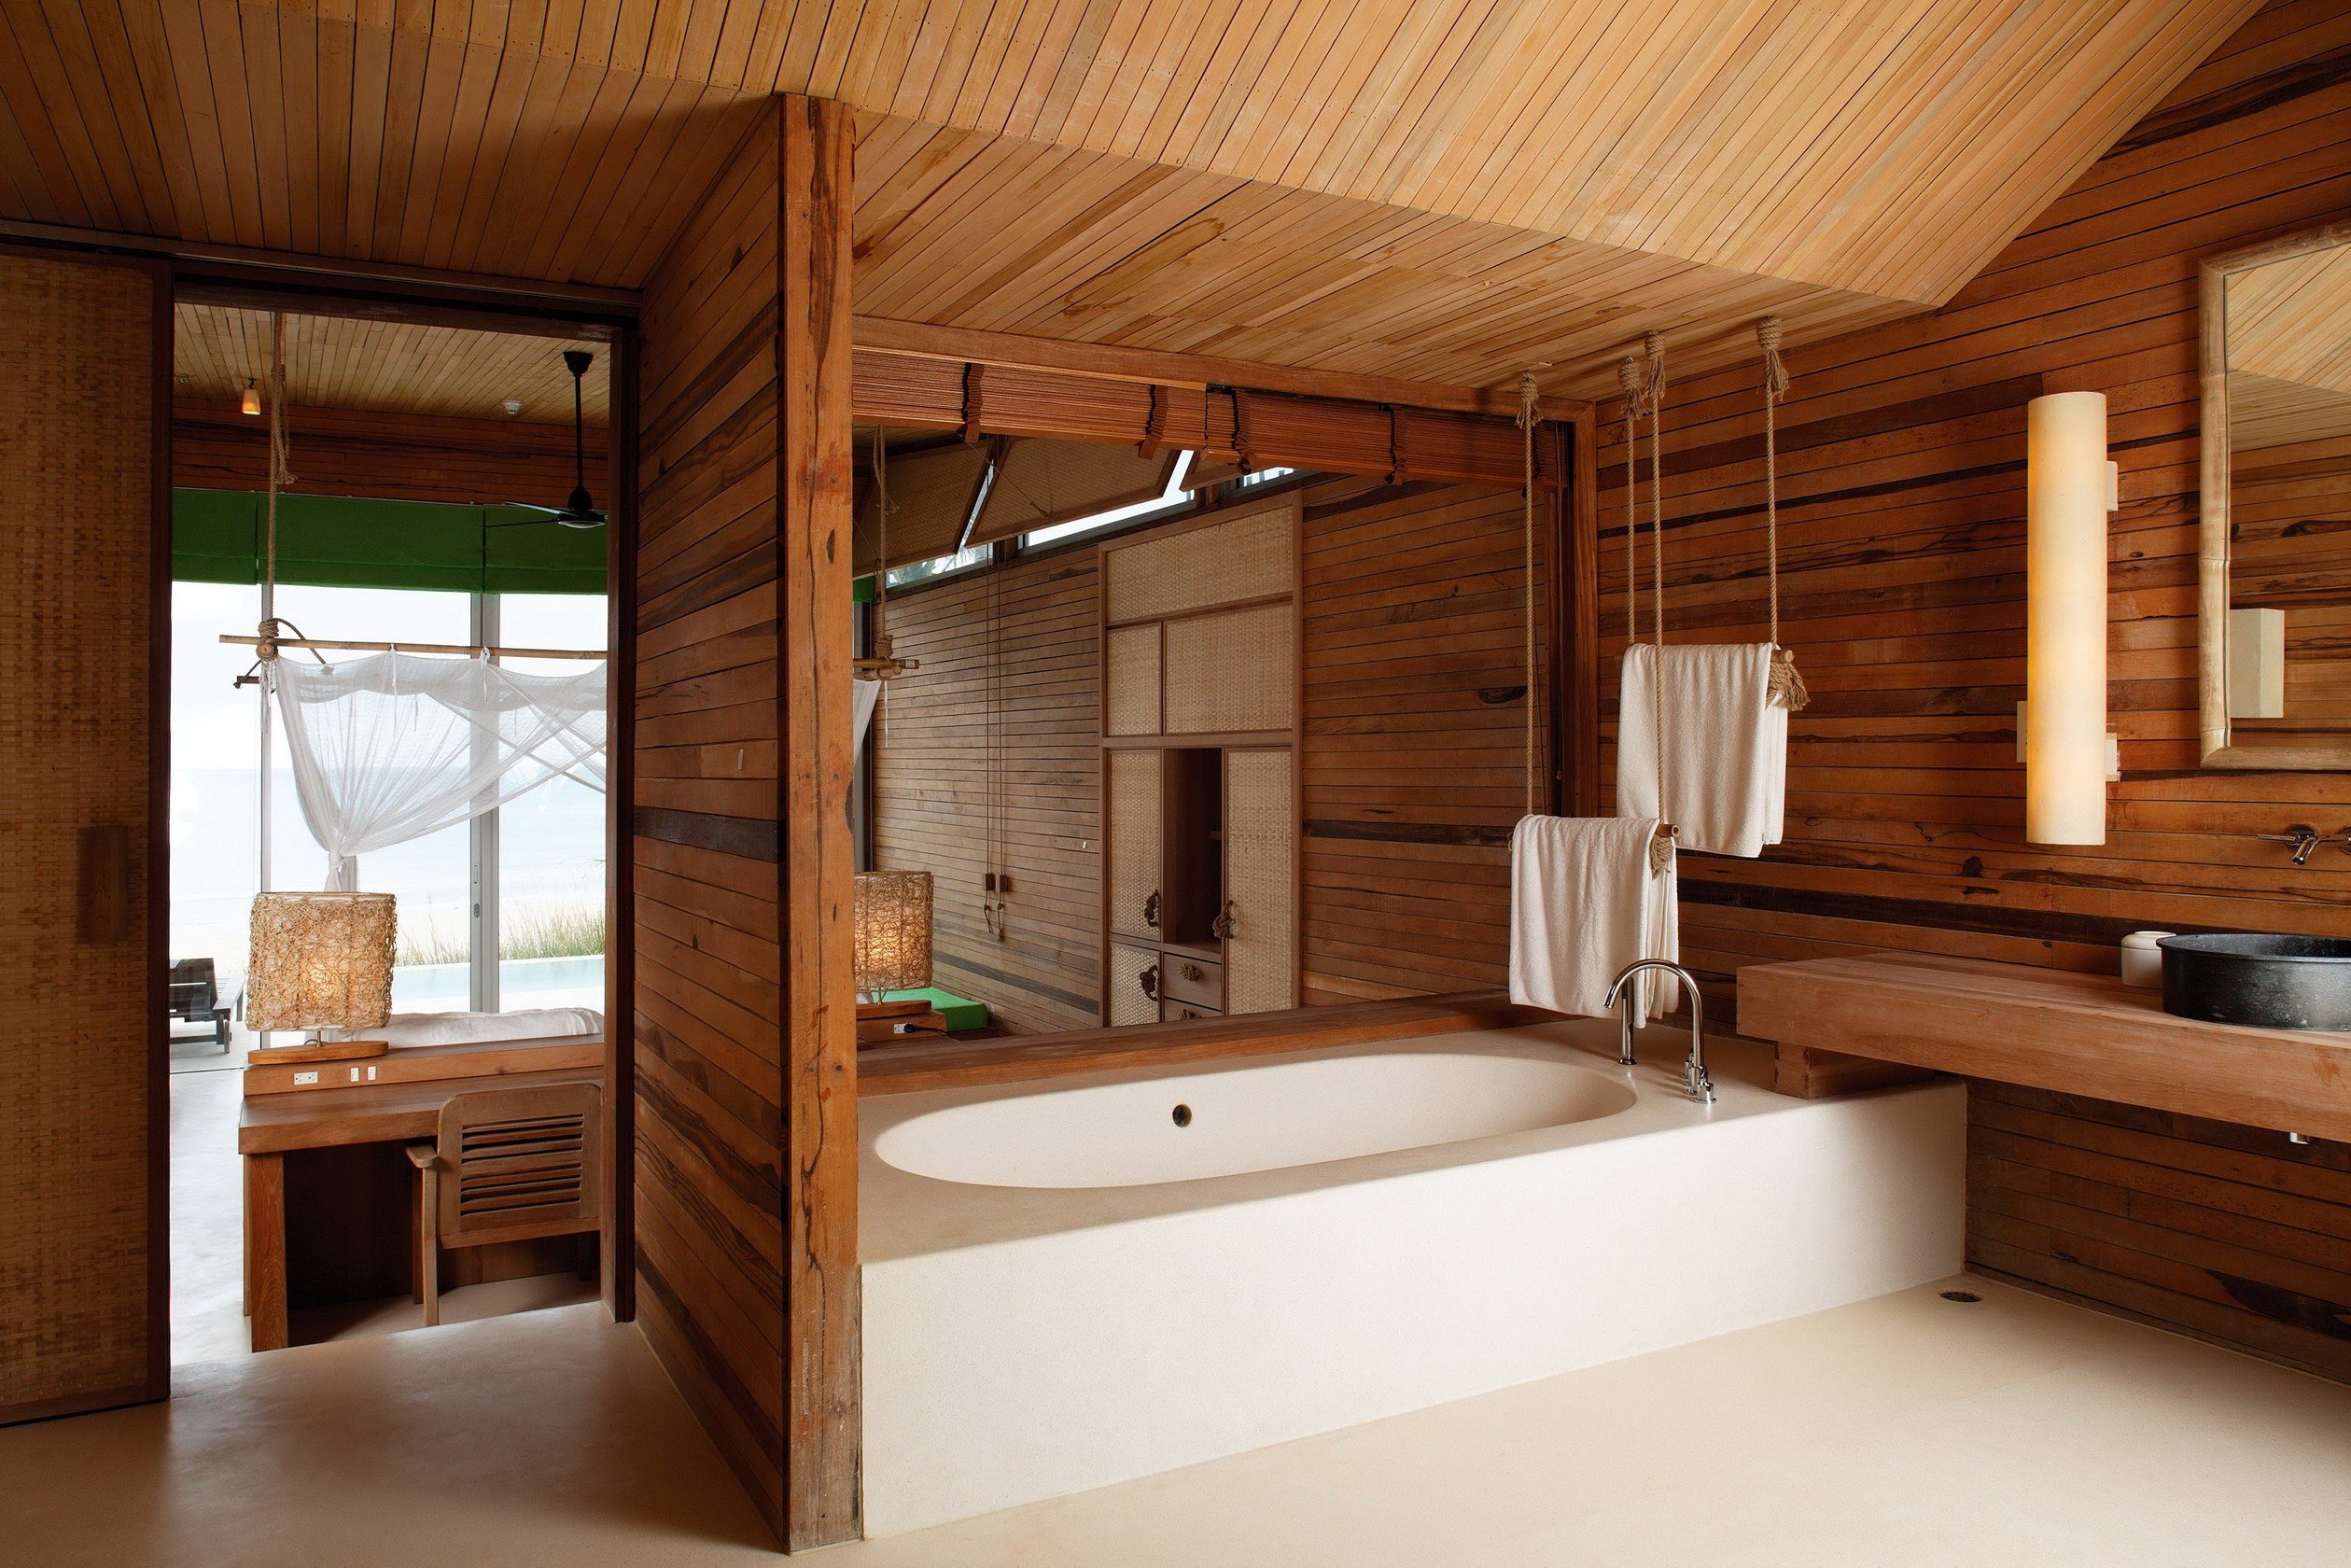 Отделка комнаты деревом. Деревянная ванная комната. Ванная комната с деревом. Дерево в интерьере ванной комнаты. Ванная комната отделка деревом.